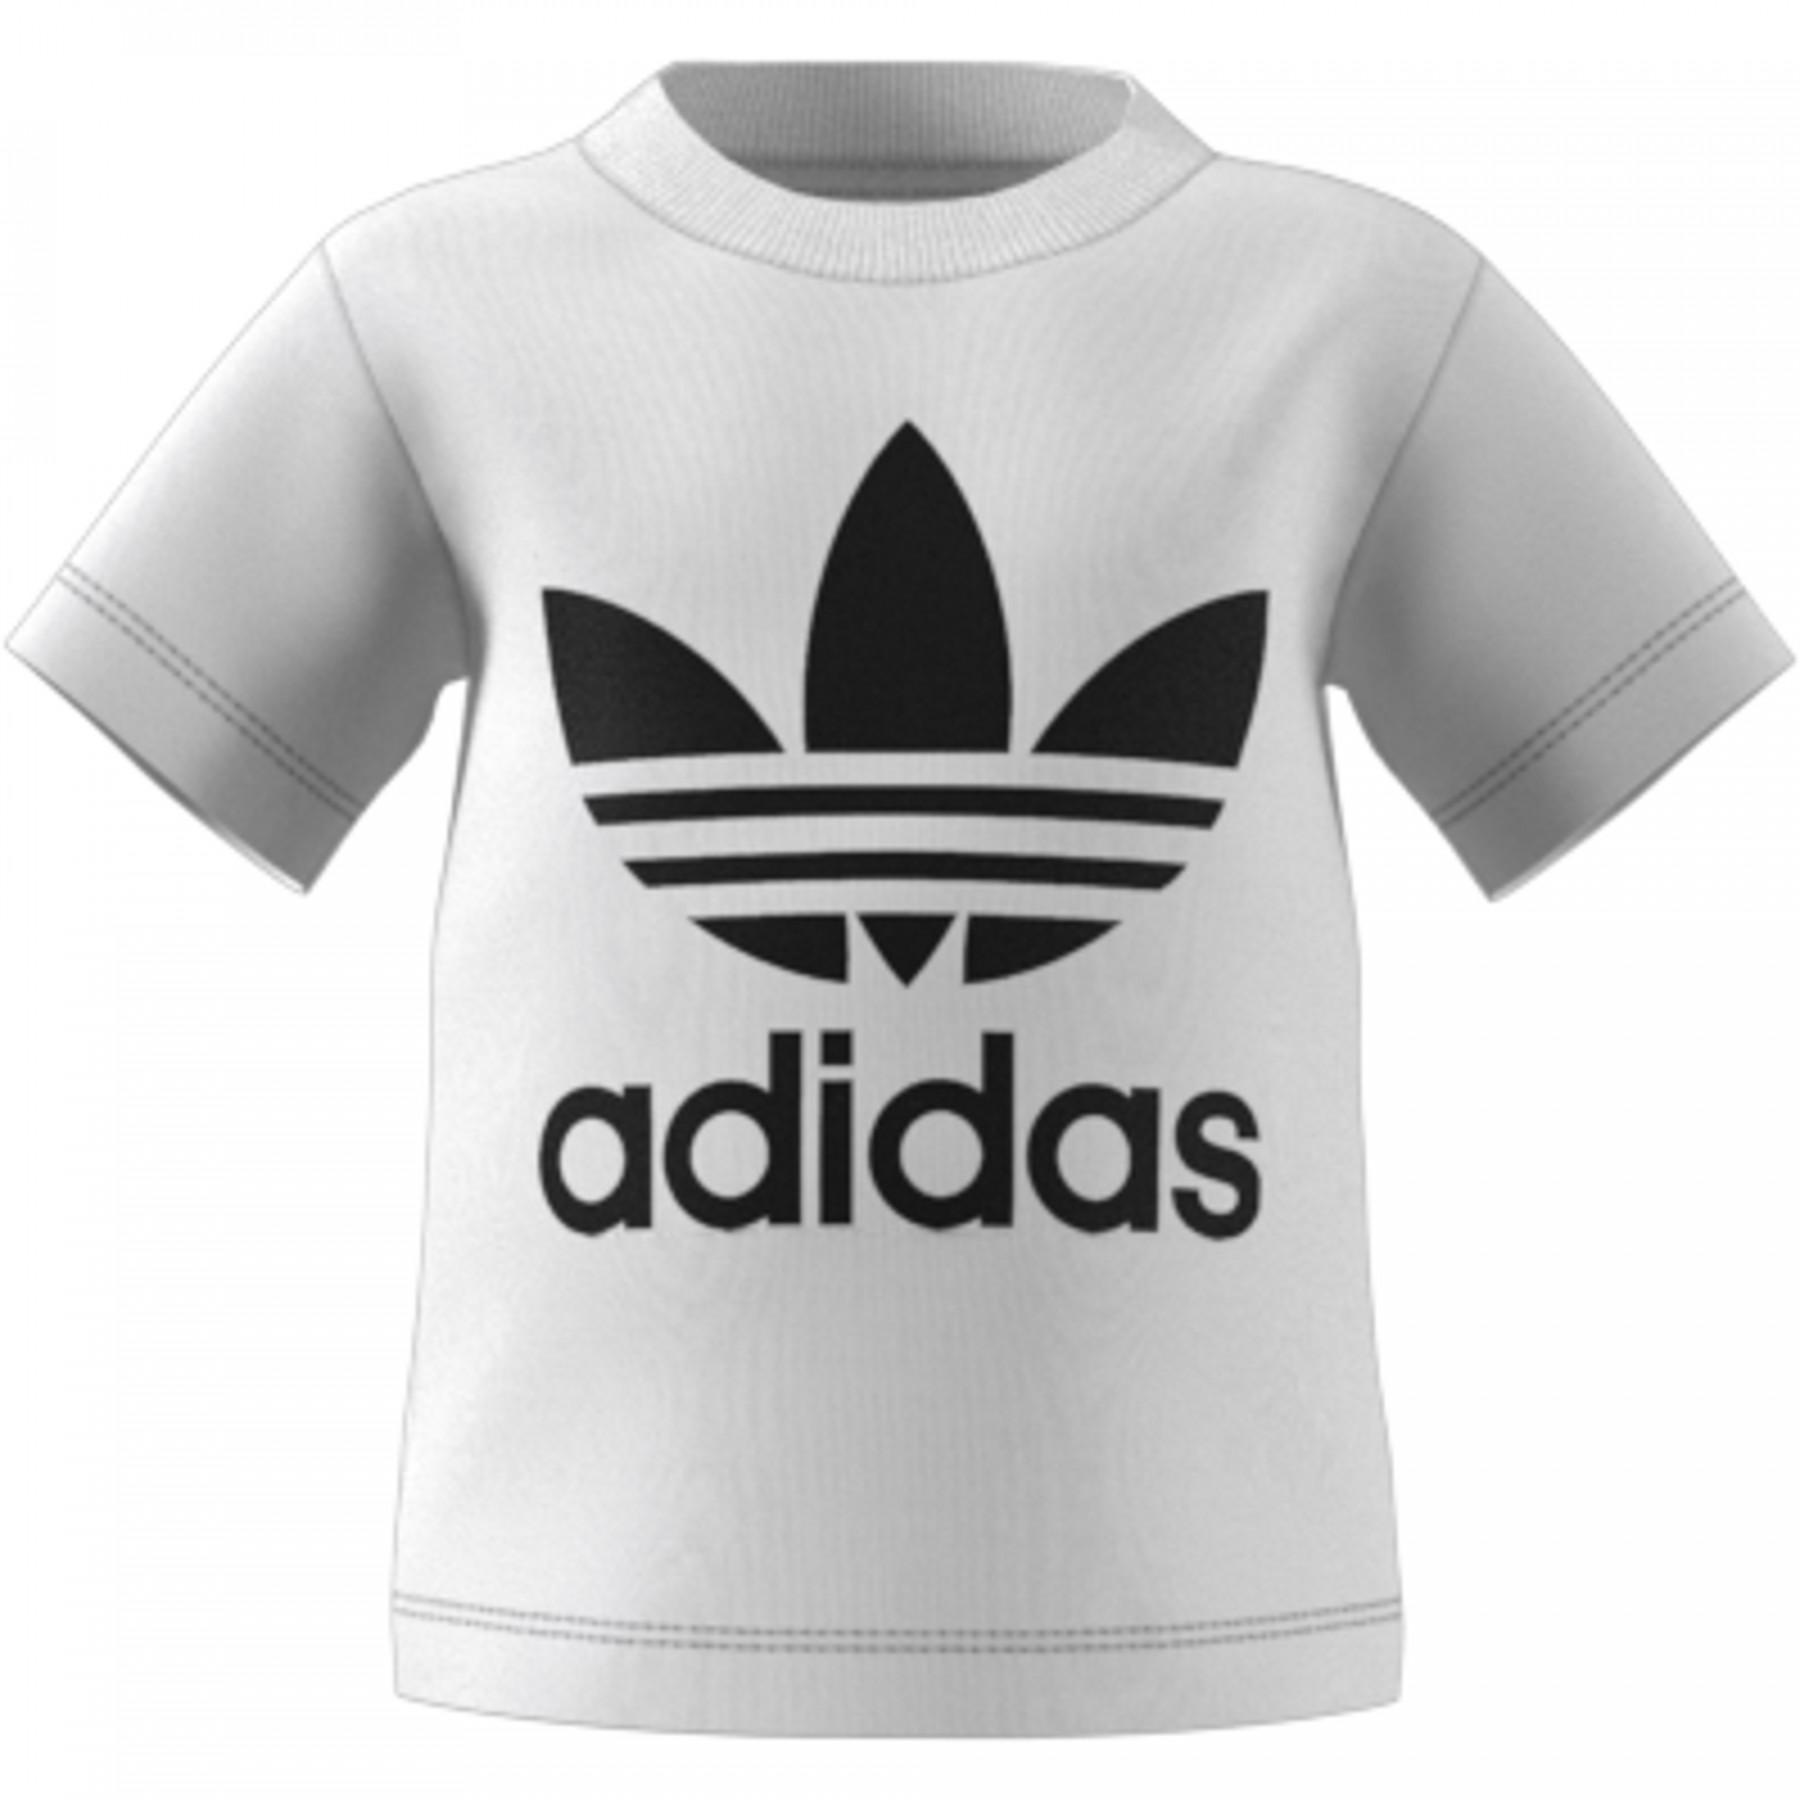 koszulka dziecięca adidas Trefoil